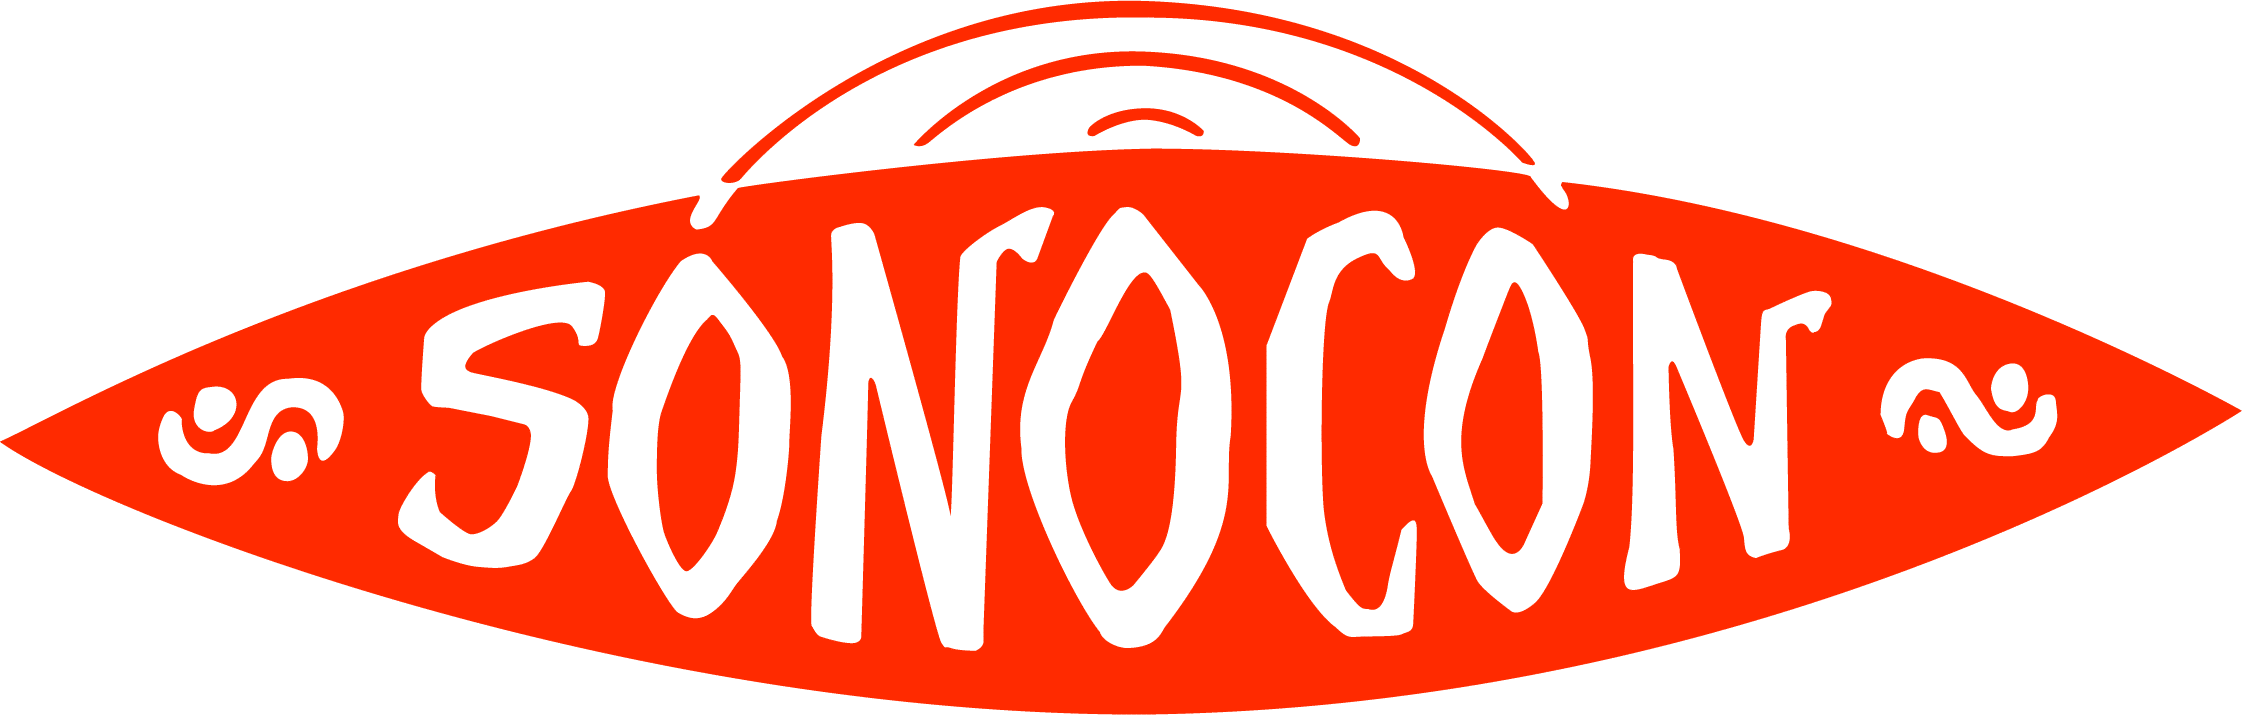 Acústica Profesional Sonocon logo